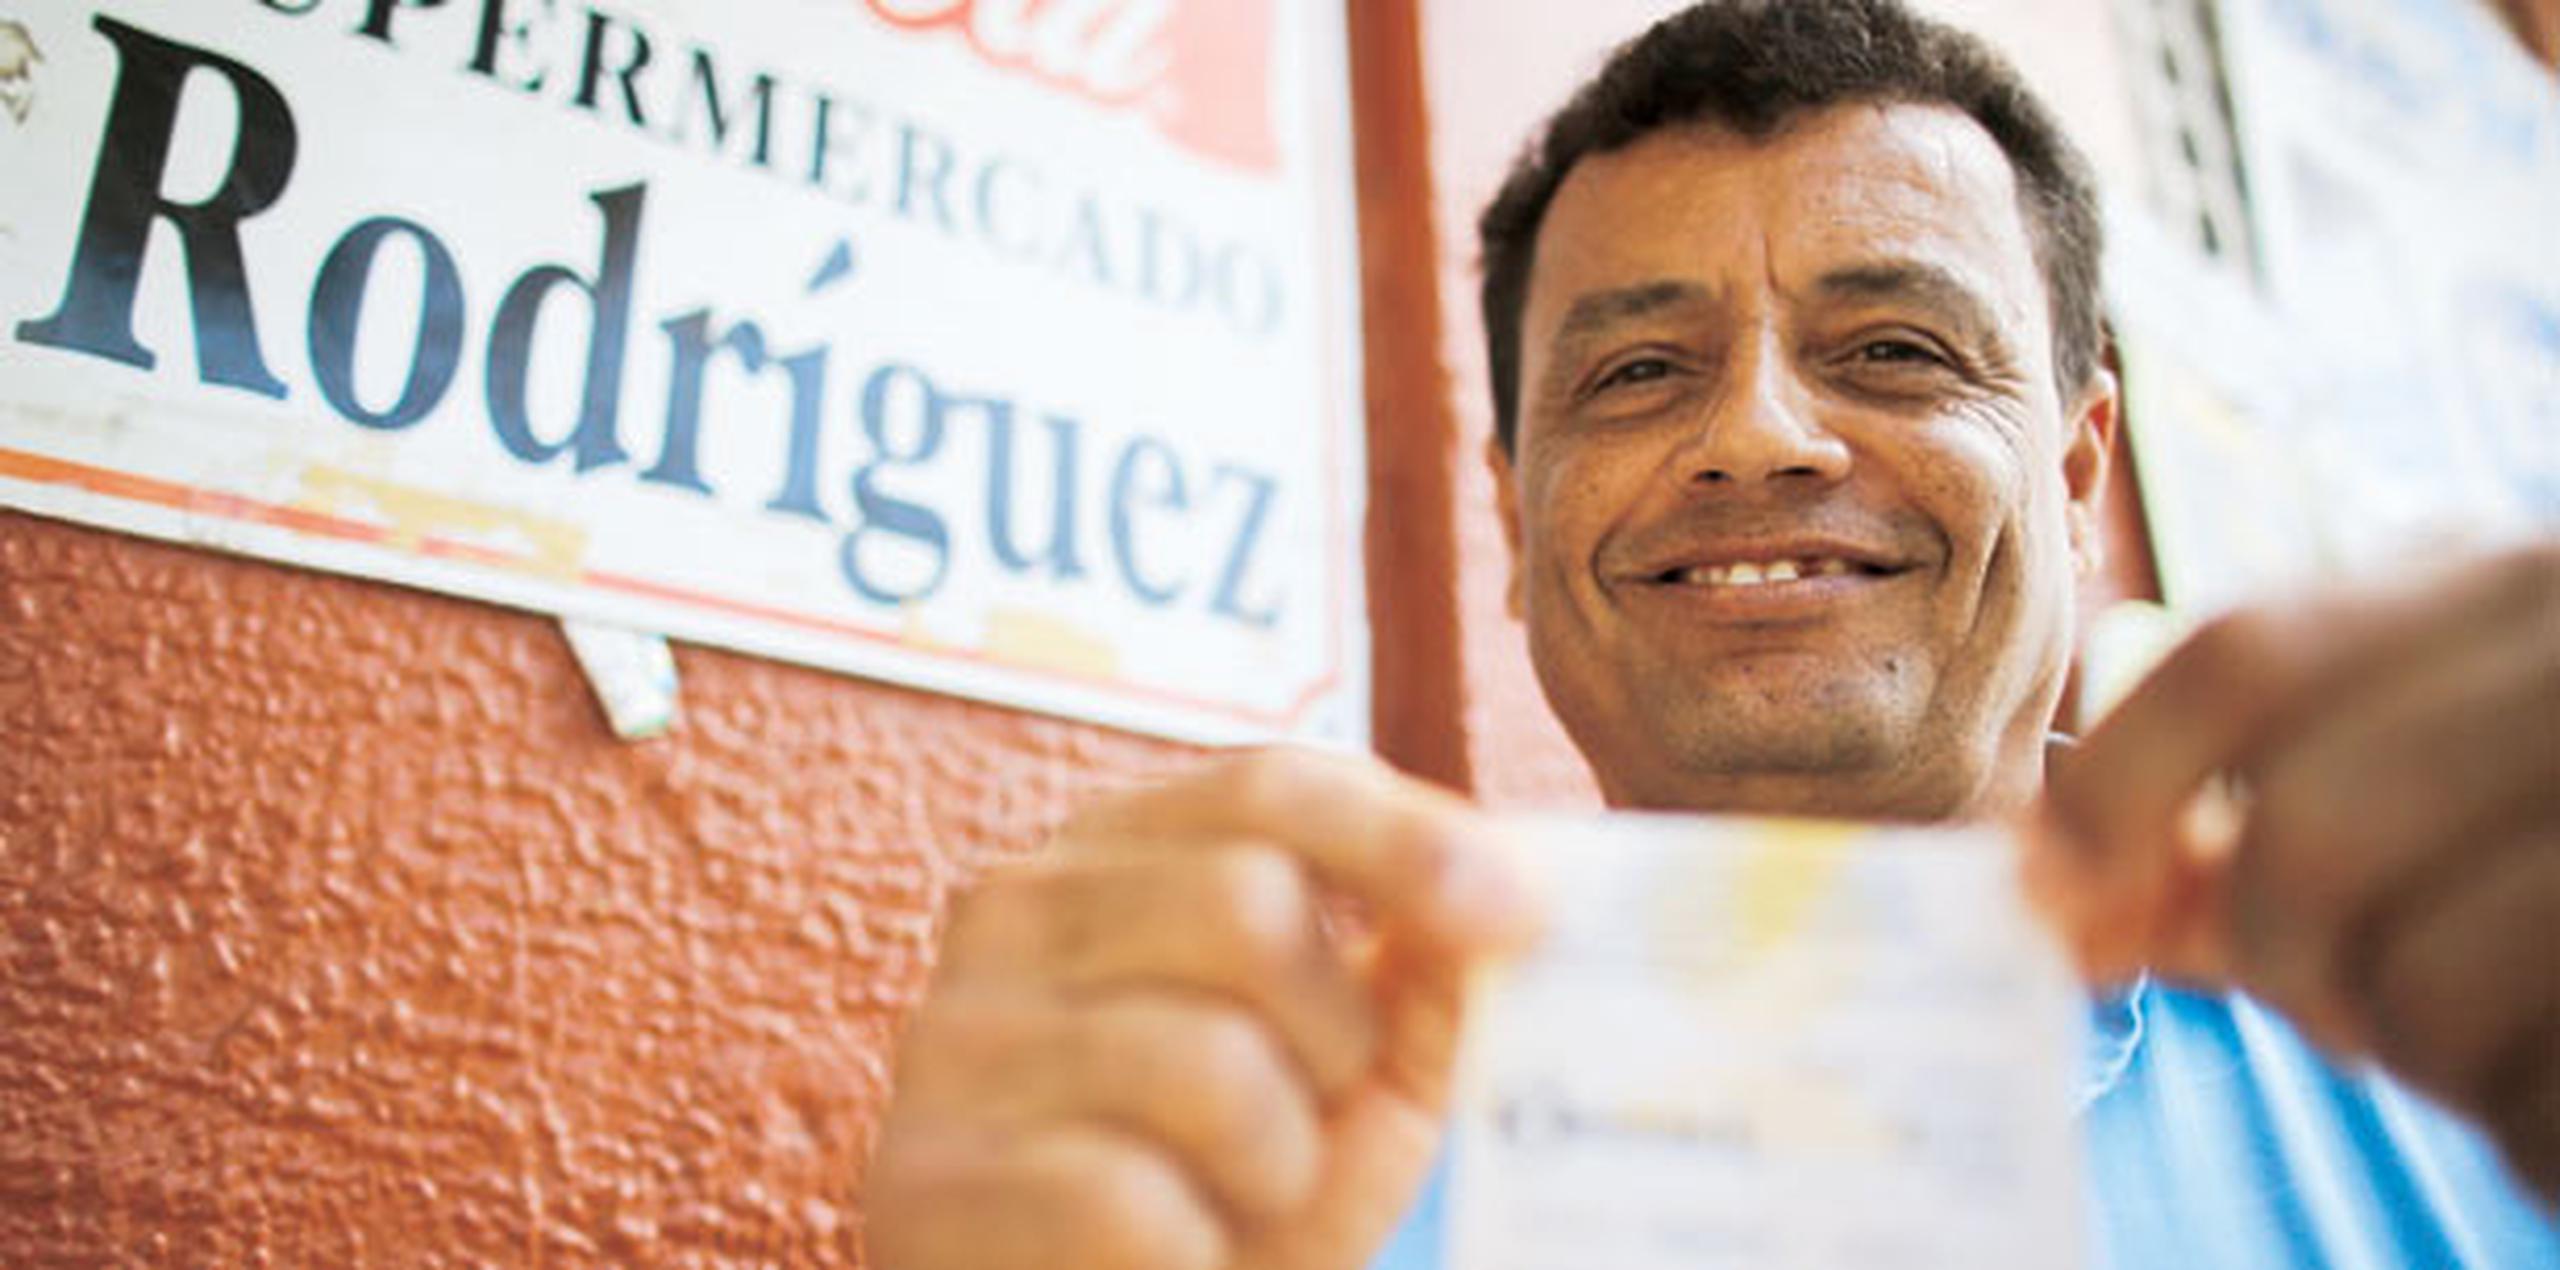 Muchos, como Alcides Rodríguez, jugaron un pesito en el supermercado Rodríguez a ver si también son millonarios. (tonito.zayas@gfrmedia.com)